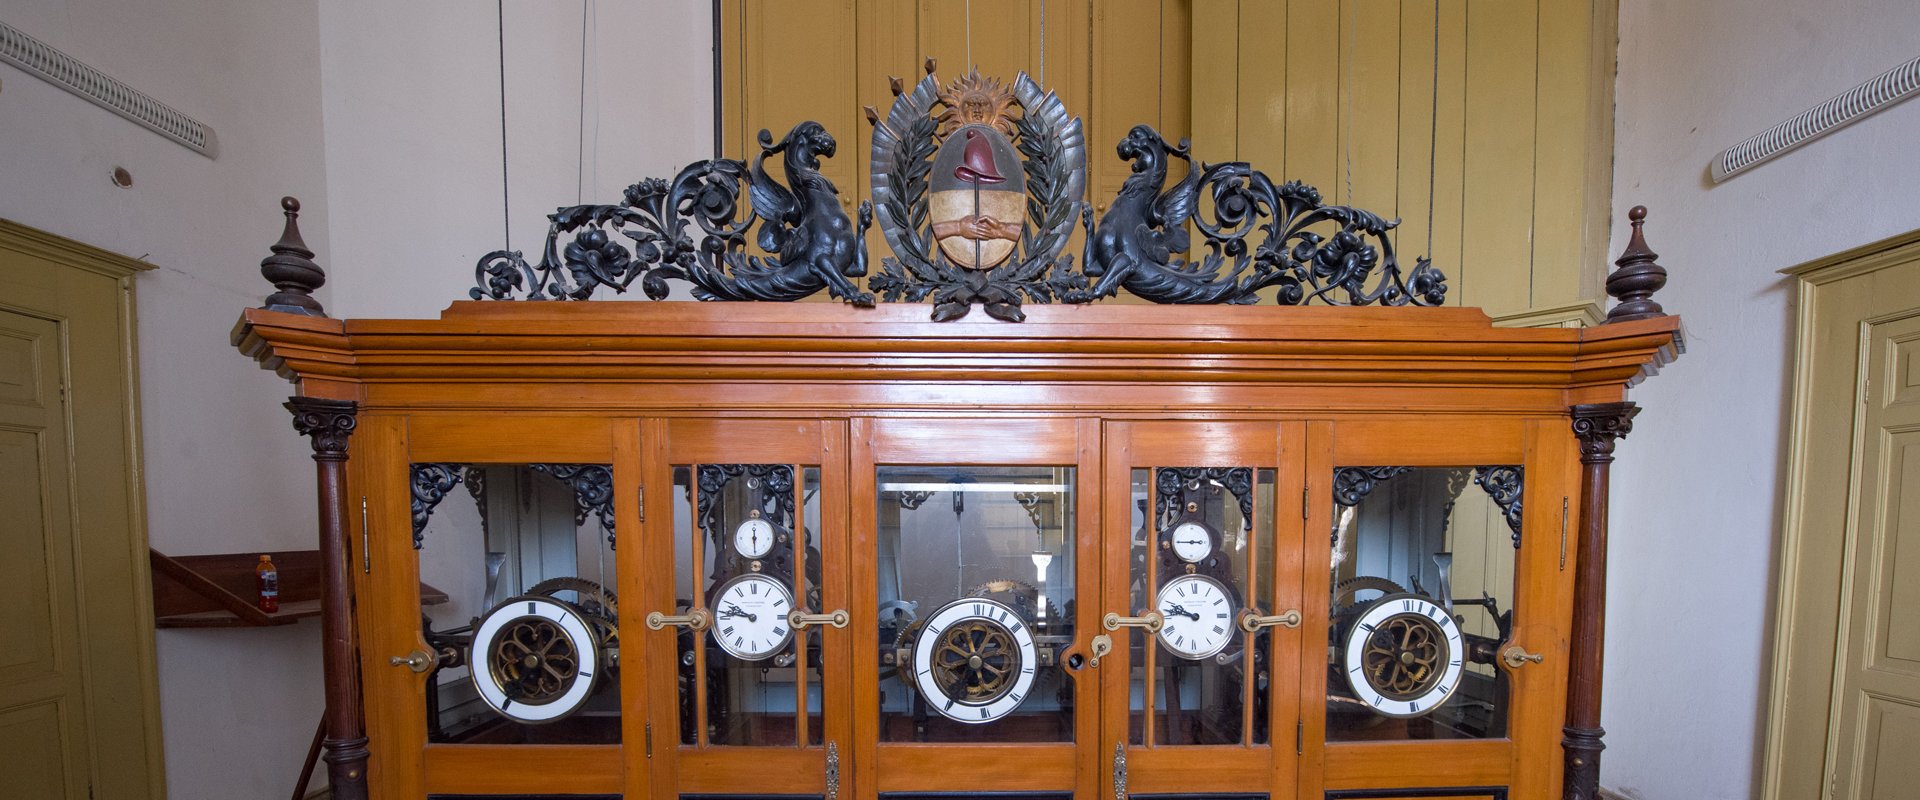 Con la puesta en valor de la cúpula y el reloj finalizan los trabajos de restauración en Casa de Gobierno